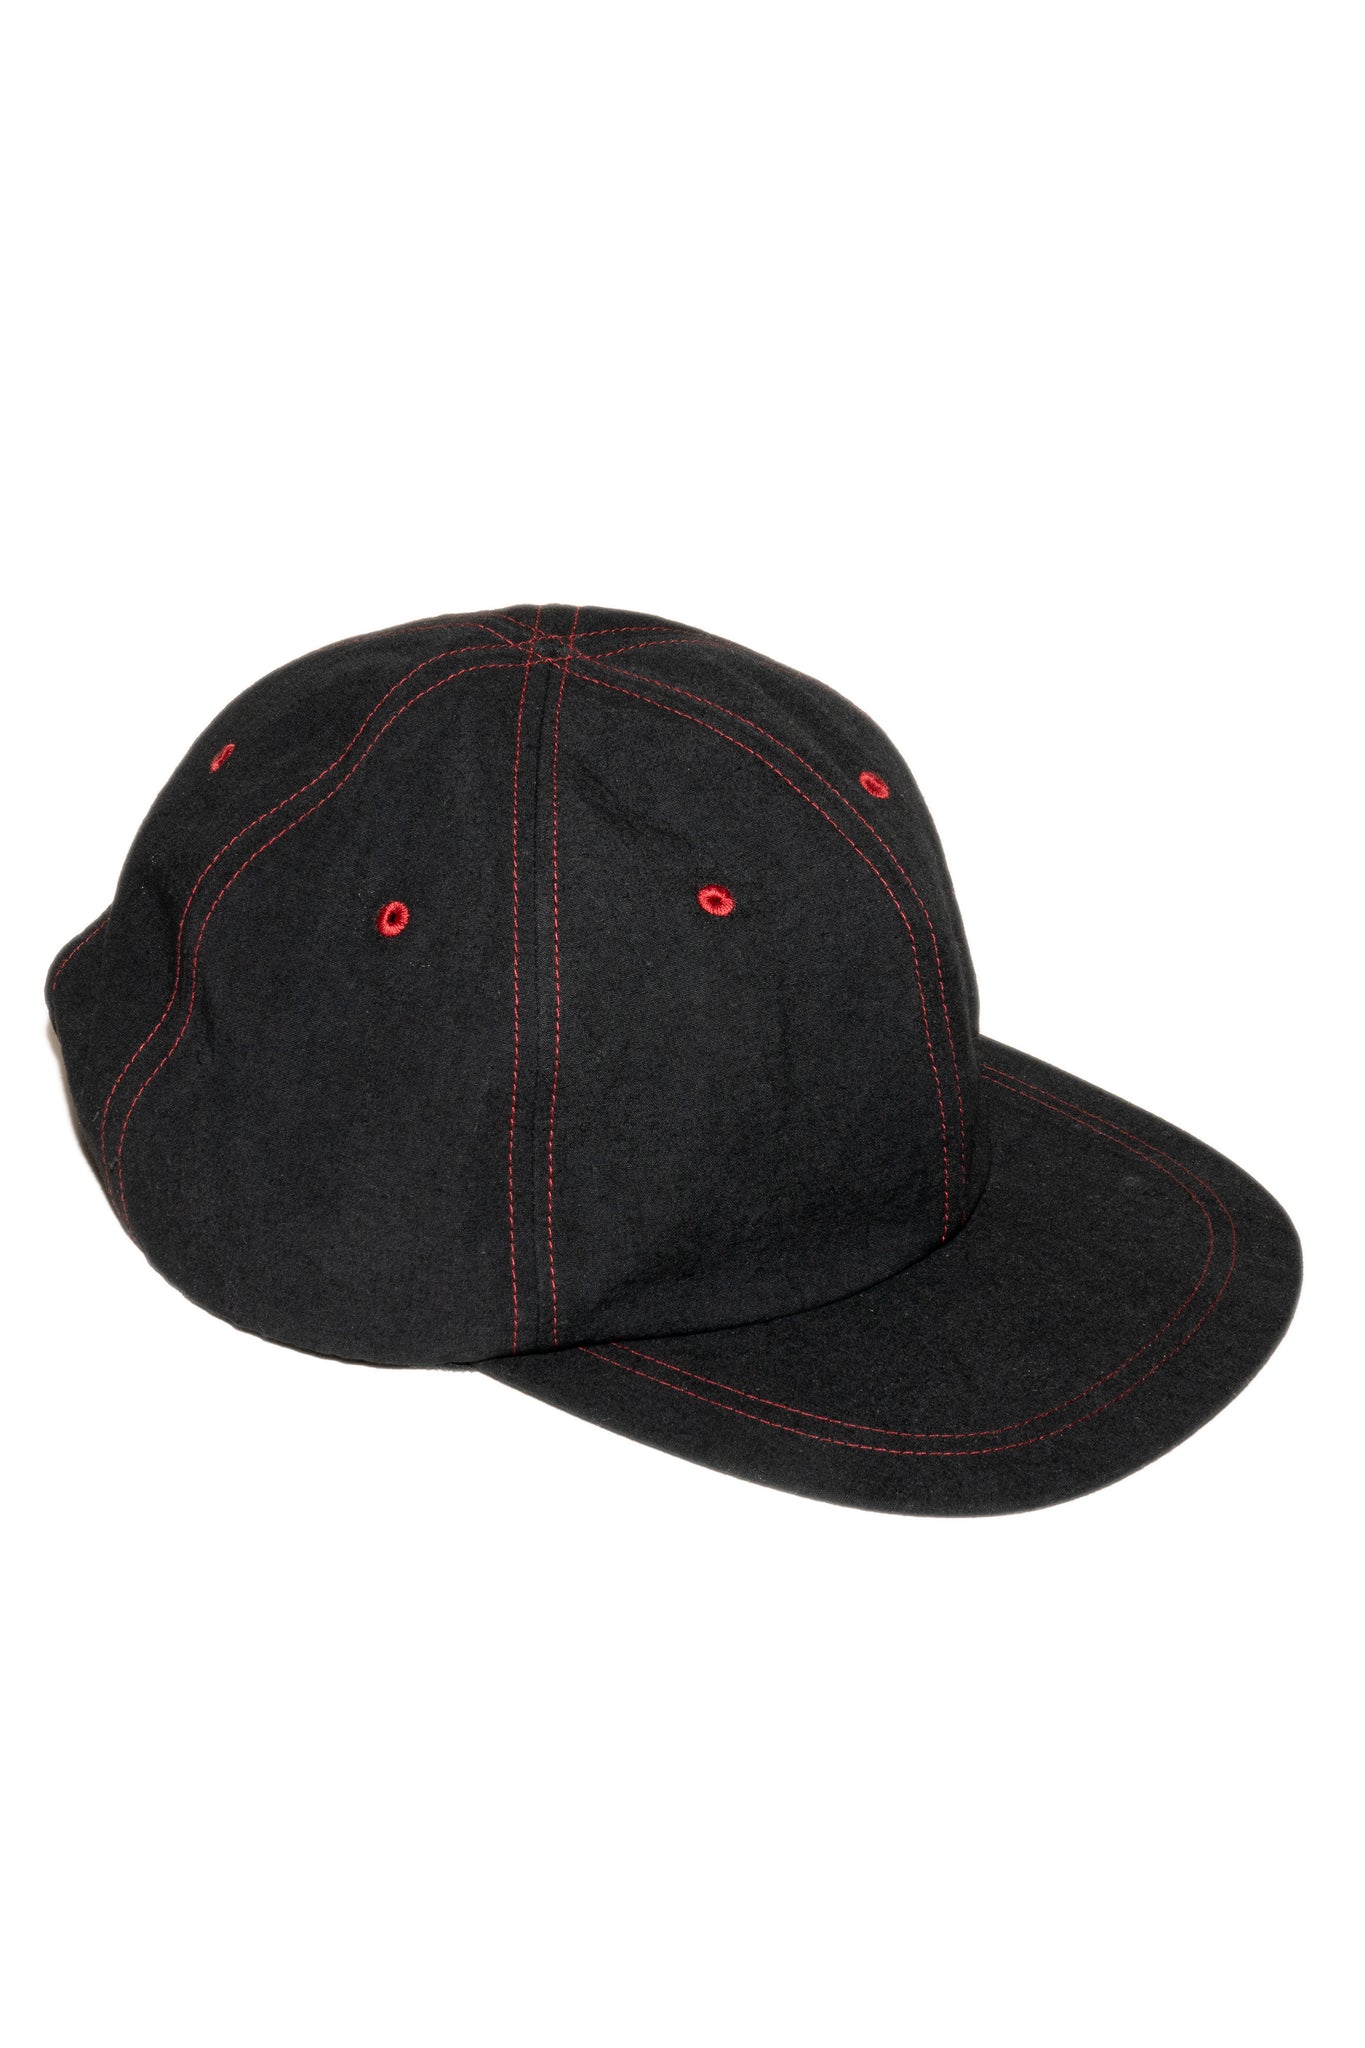 CLASSIC "HEMP" HAT IN BLACK/RED